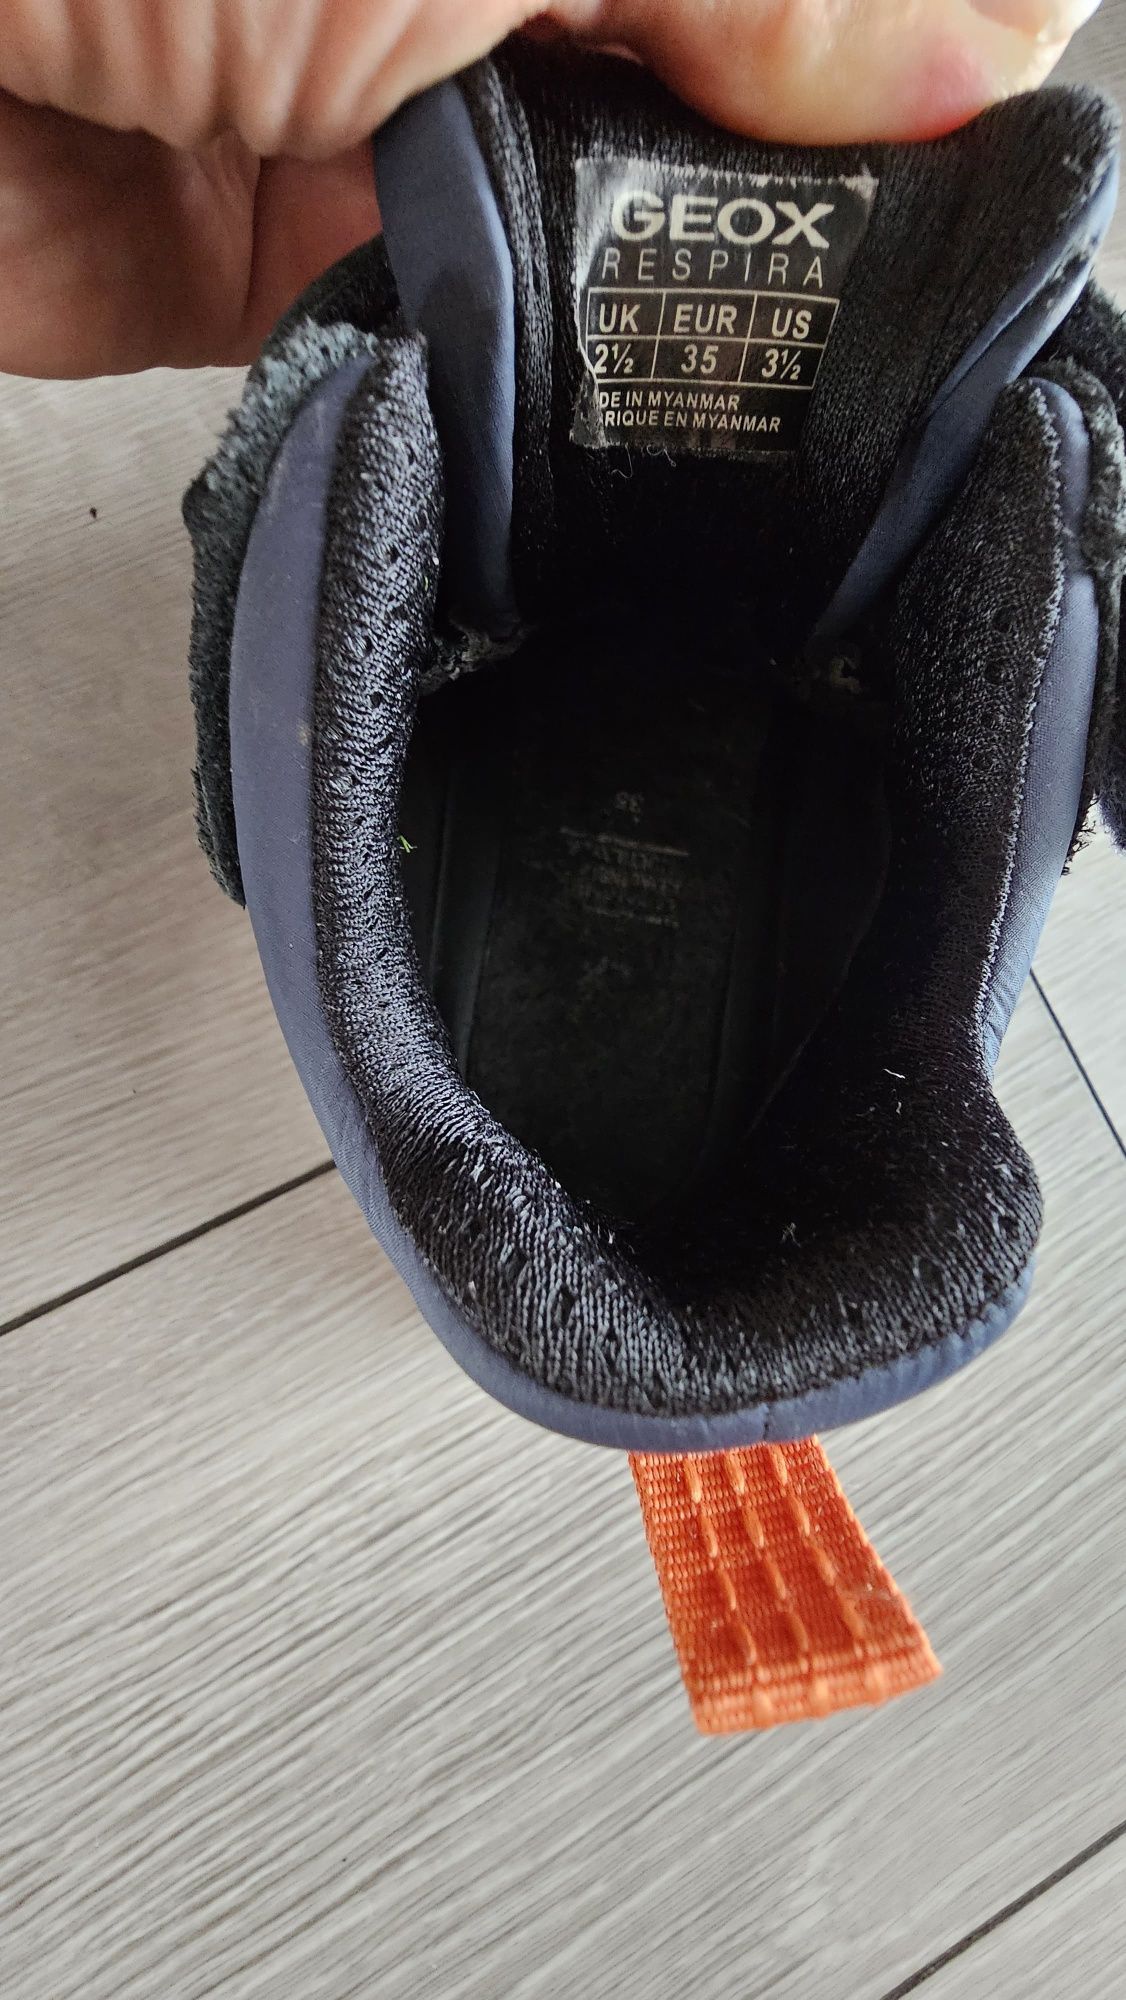 Pantofi/adidasi Geox Respira toamna/iarna  marimea 35